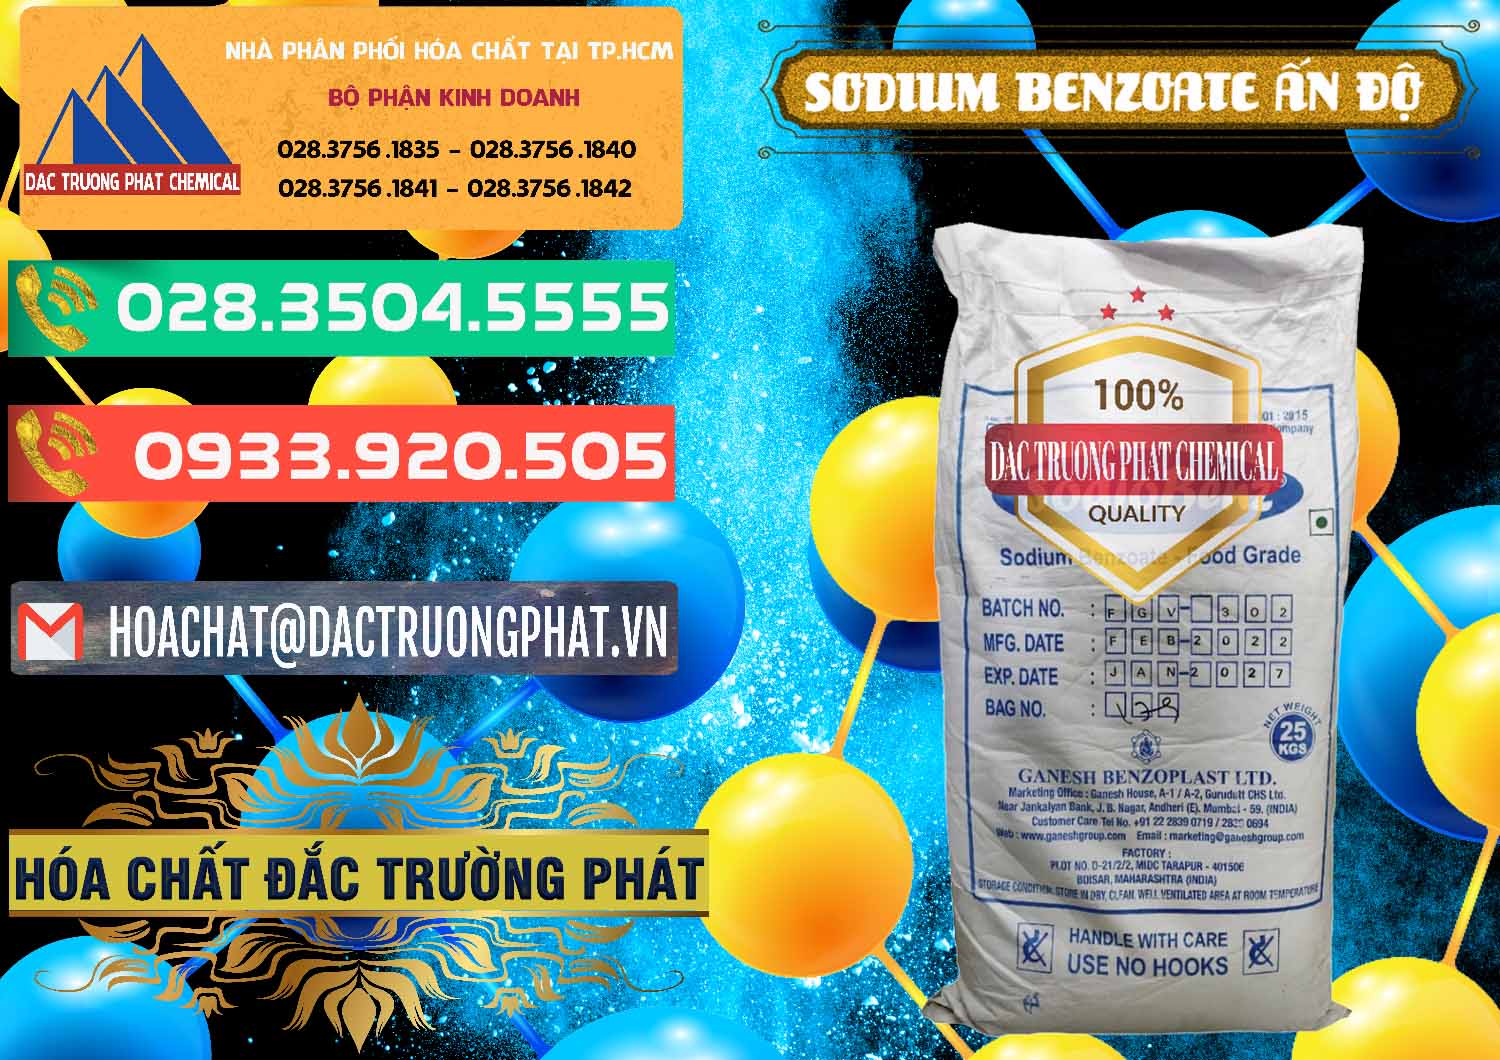 Nơi cung cấp ( bán ) Sodium Benzoate - Mốc Bột Ấn Độ India - 0361 - Công ty chuyên phân phối ( nhập khẩu ) hóa chất tại TP.HCM - congtyhoachat.com.vn